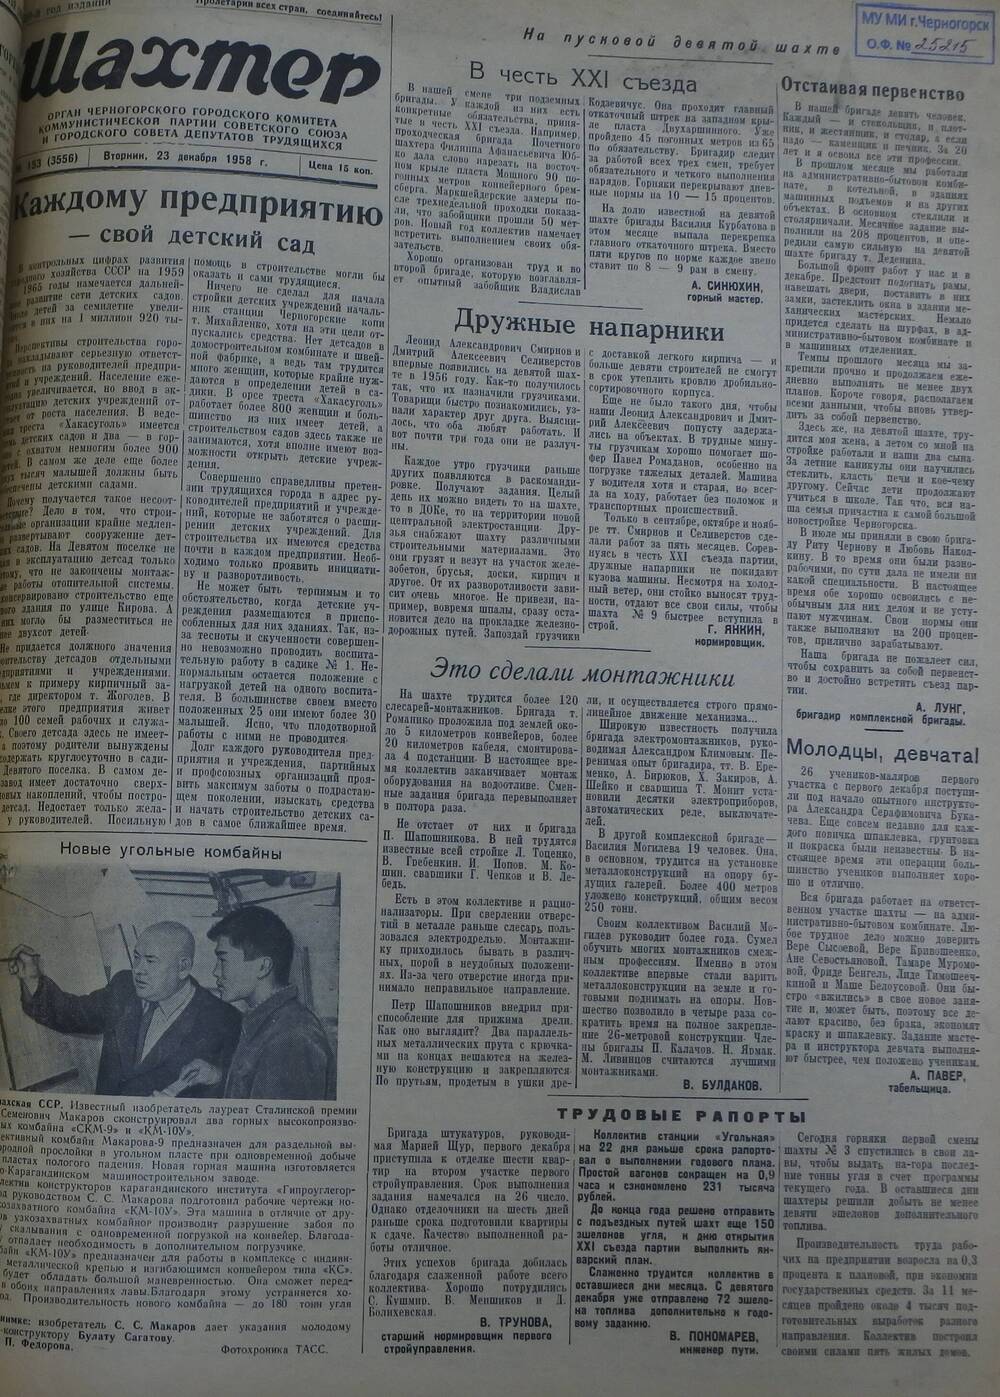 Газета «Шахтер». Выпуск № 153 от 23.12.1958 г.